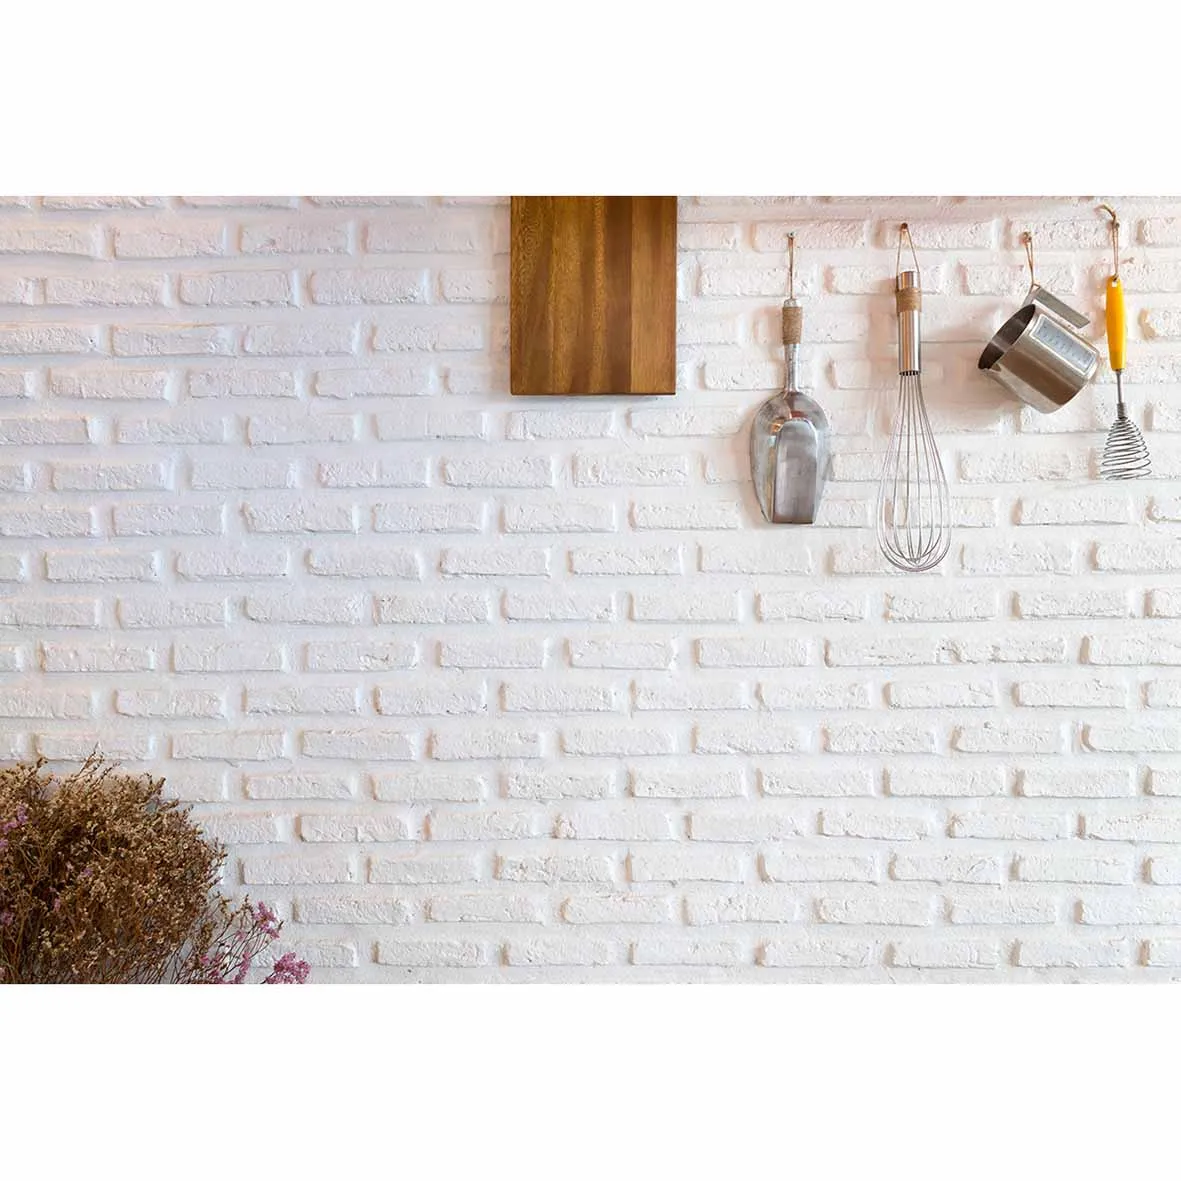 Funnytree фото фон белая кирпичная стена с кухонными инструментами фон для профессиональной фотографии декорации фотосессии